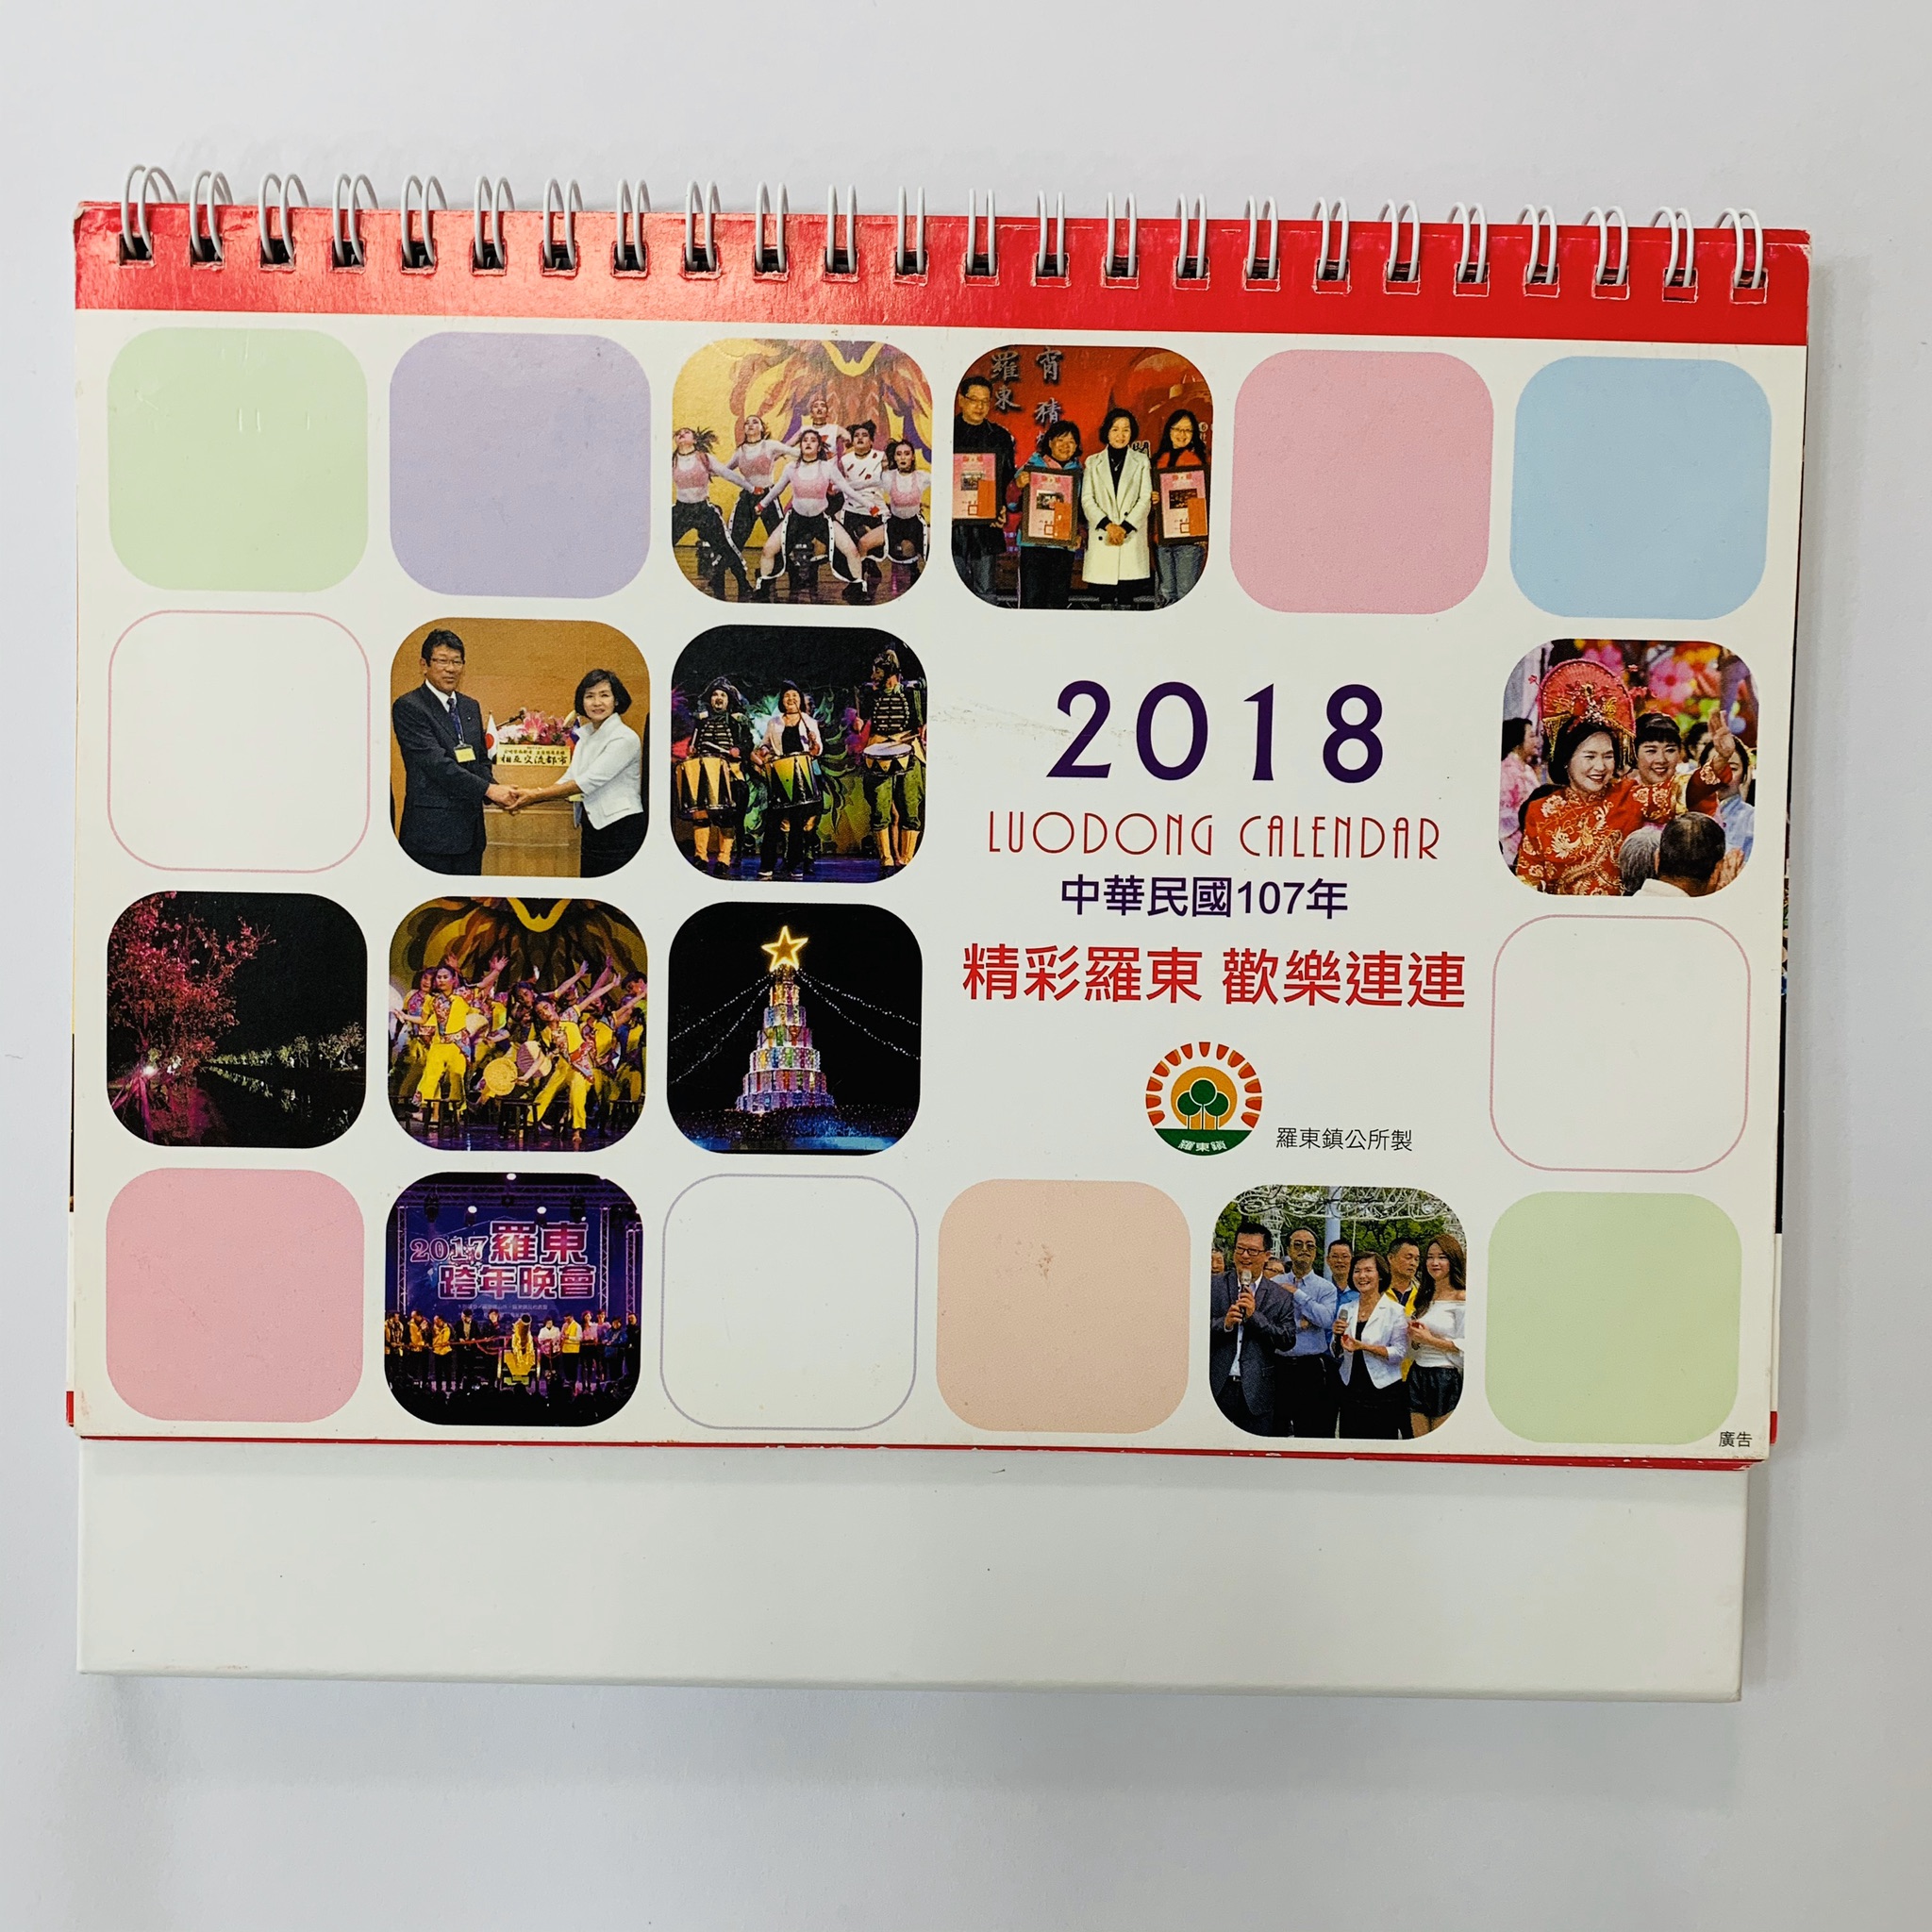 2018精彩羅東桌曆